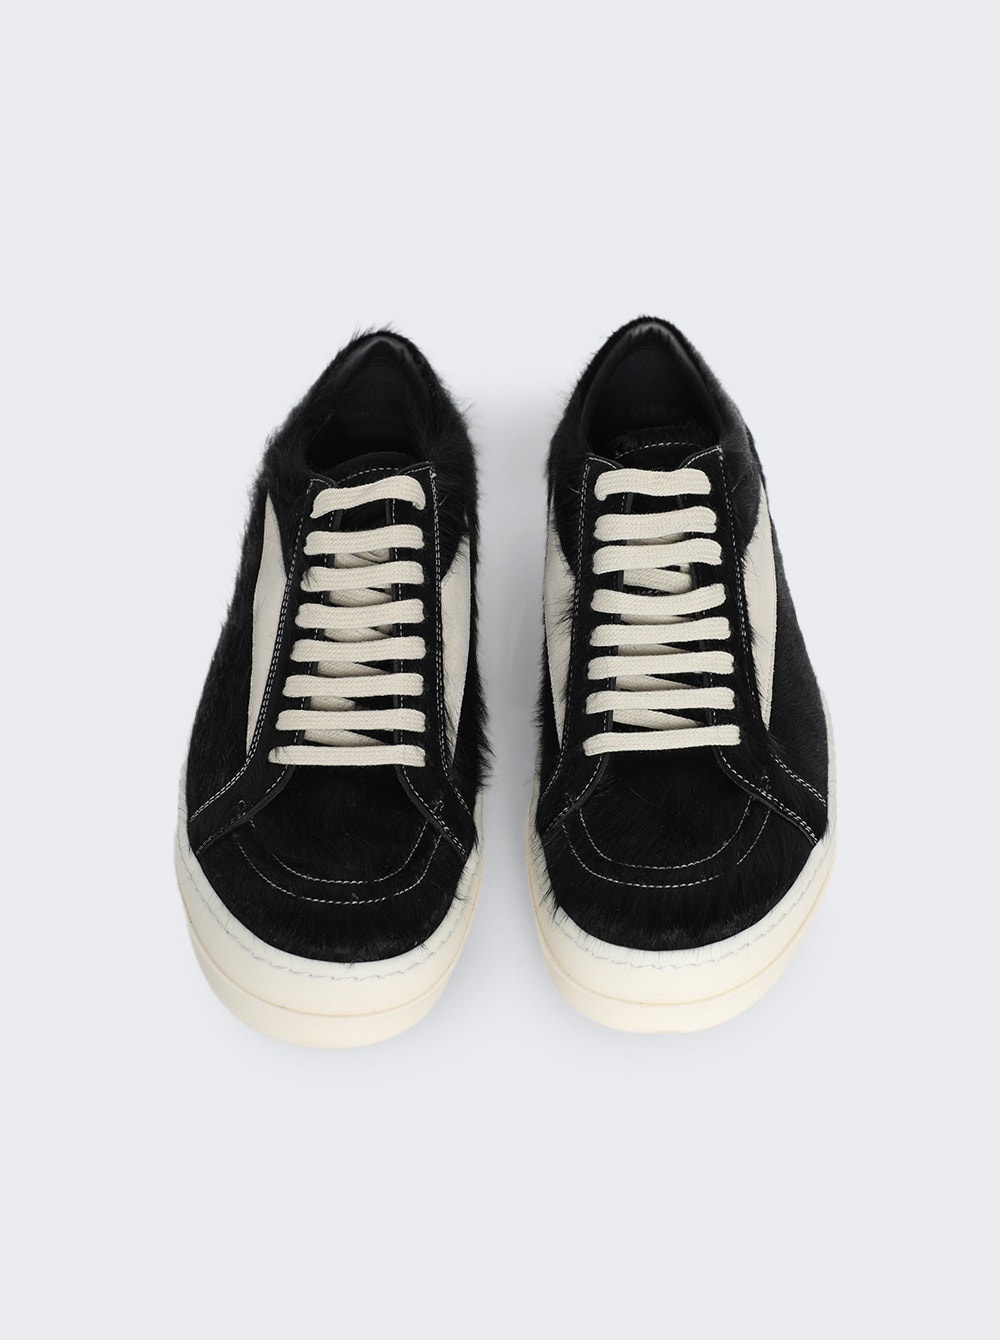 Scarpe In Pelliccia Calf Hair Vintage Sneakers Black And Milk - 3